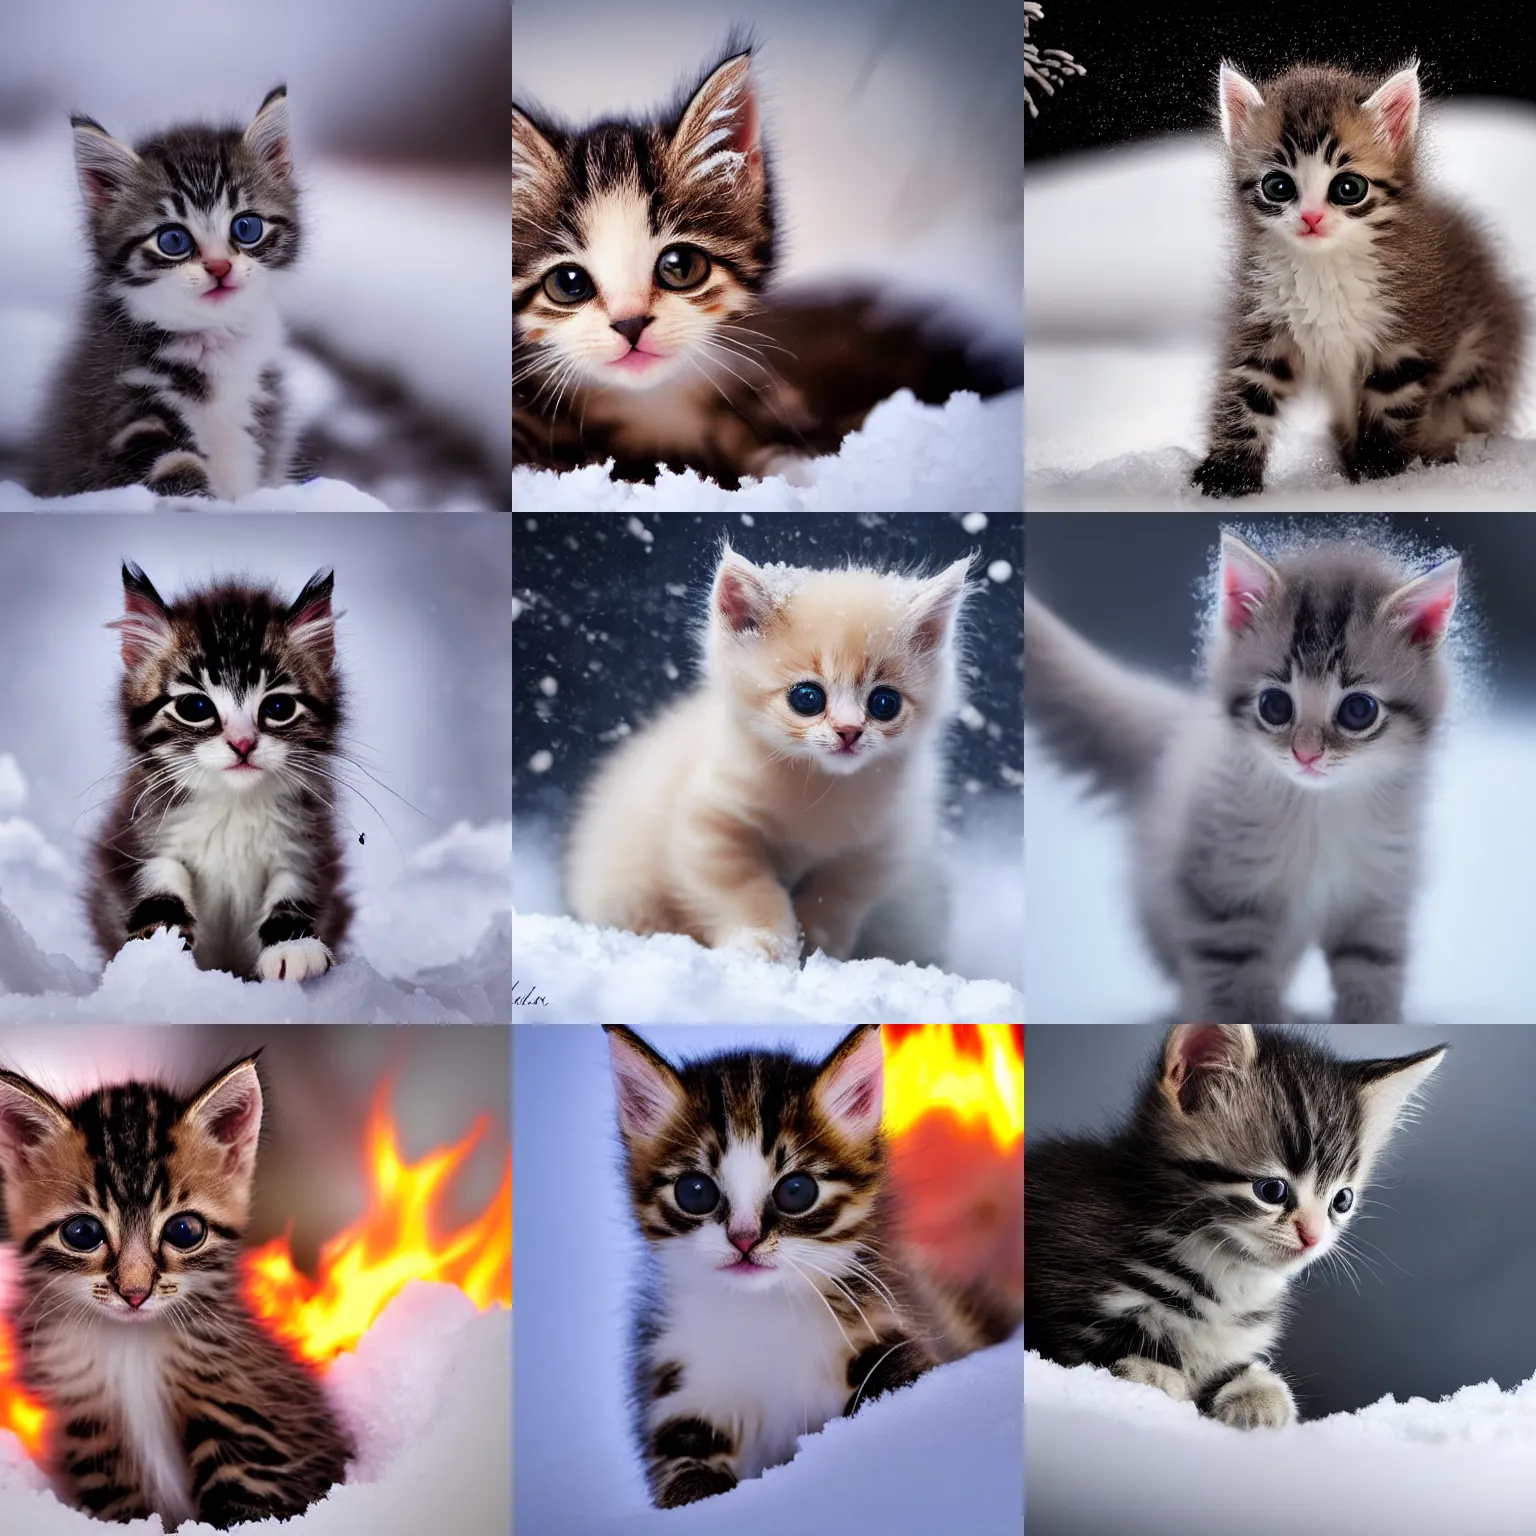 Prompt: extreme long shot cute baby kitten burning, award winning photo, snow, high detail, atmospheric, 8k